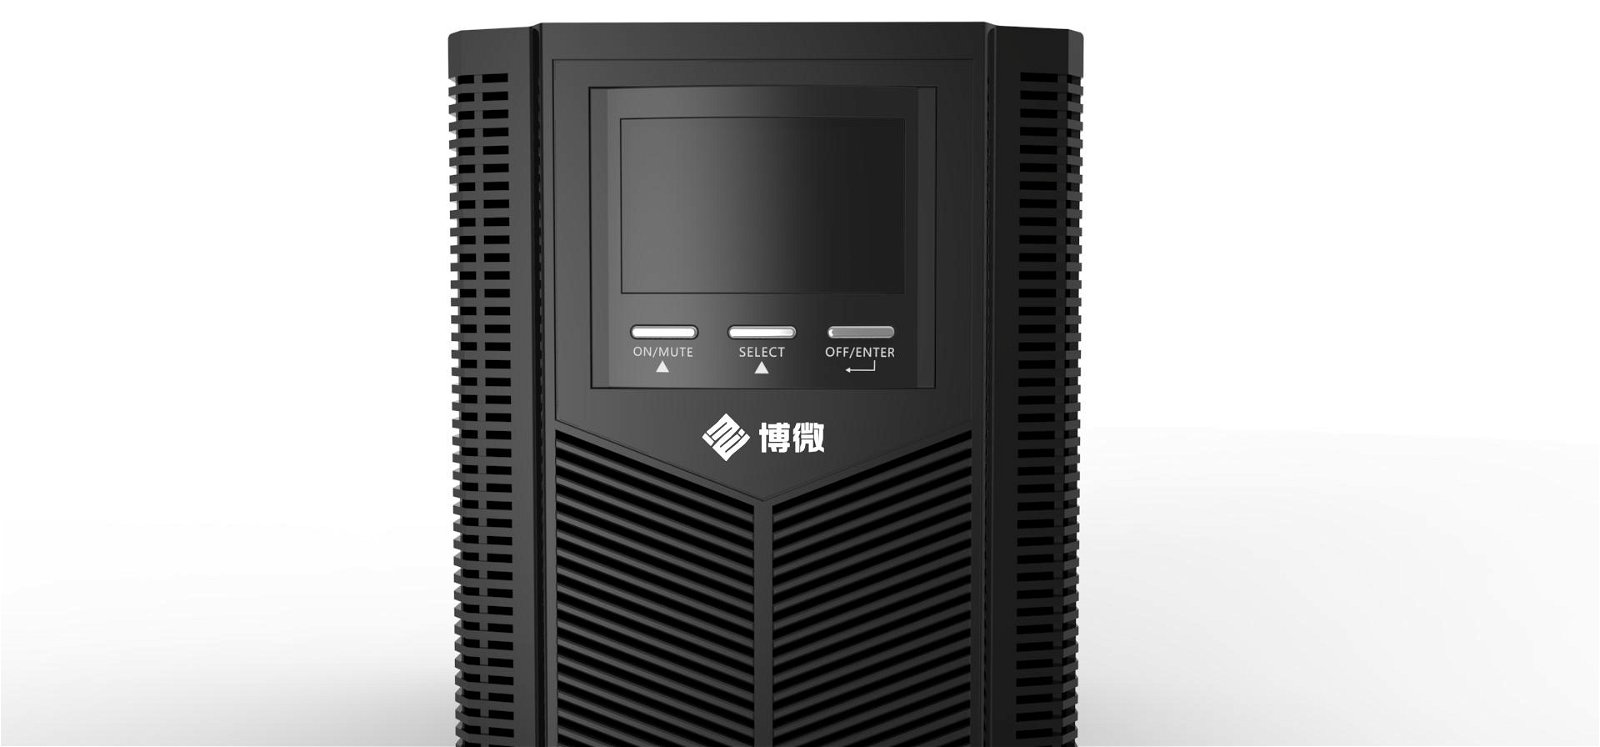 安徽博微智能電氣有限公司高頻塔式UPS